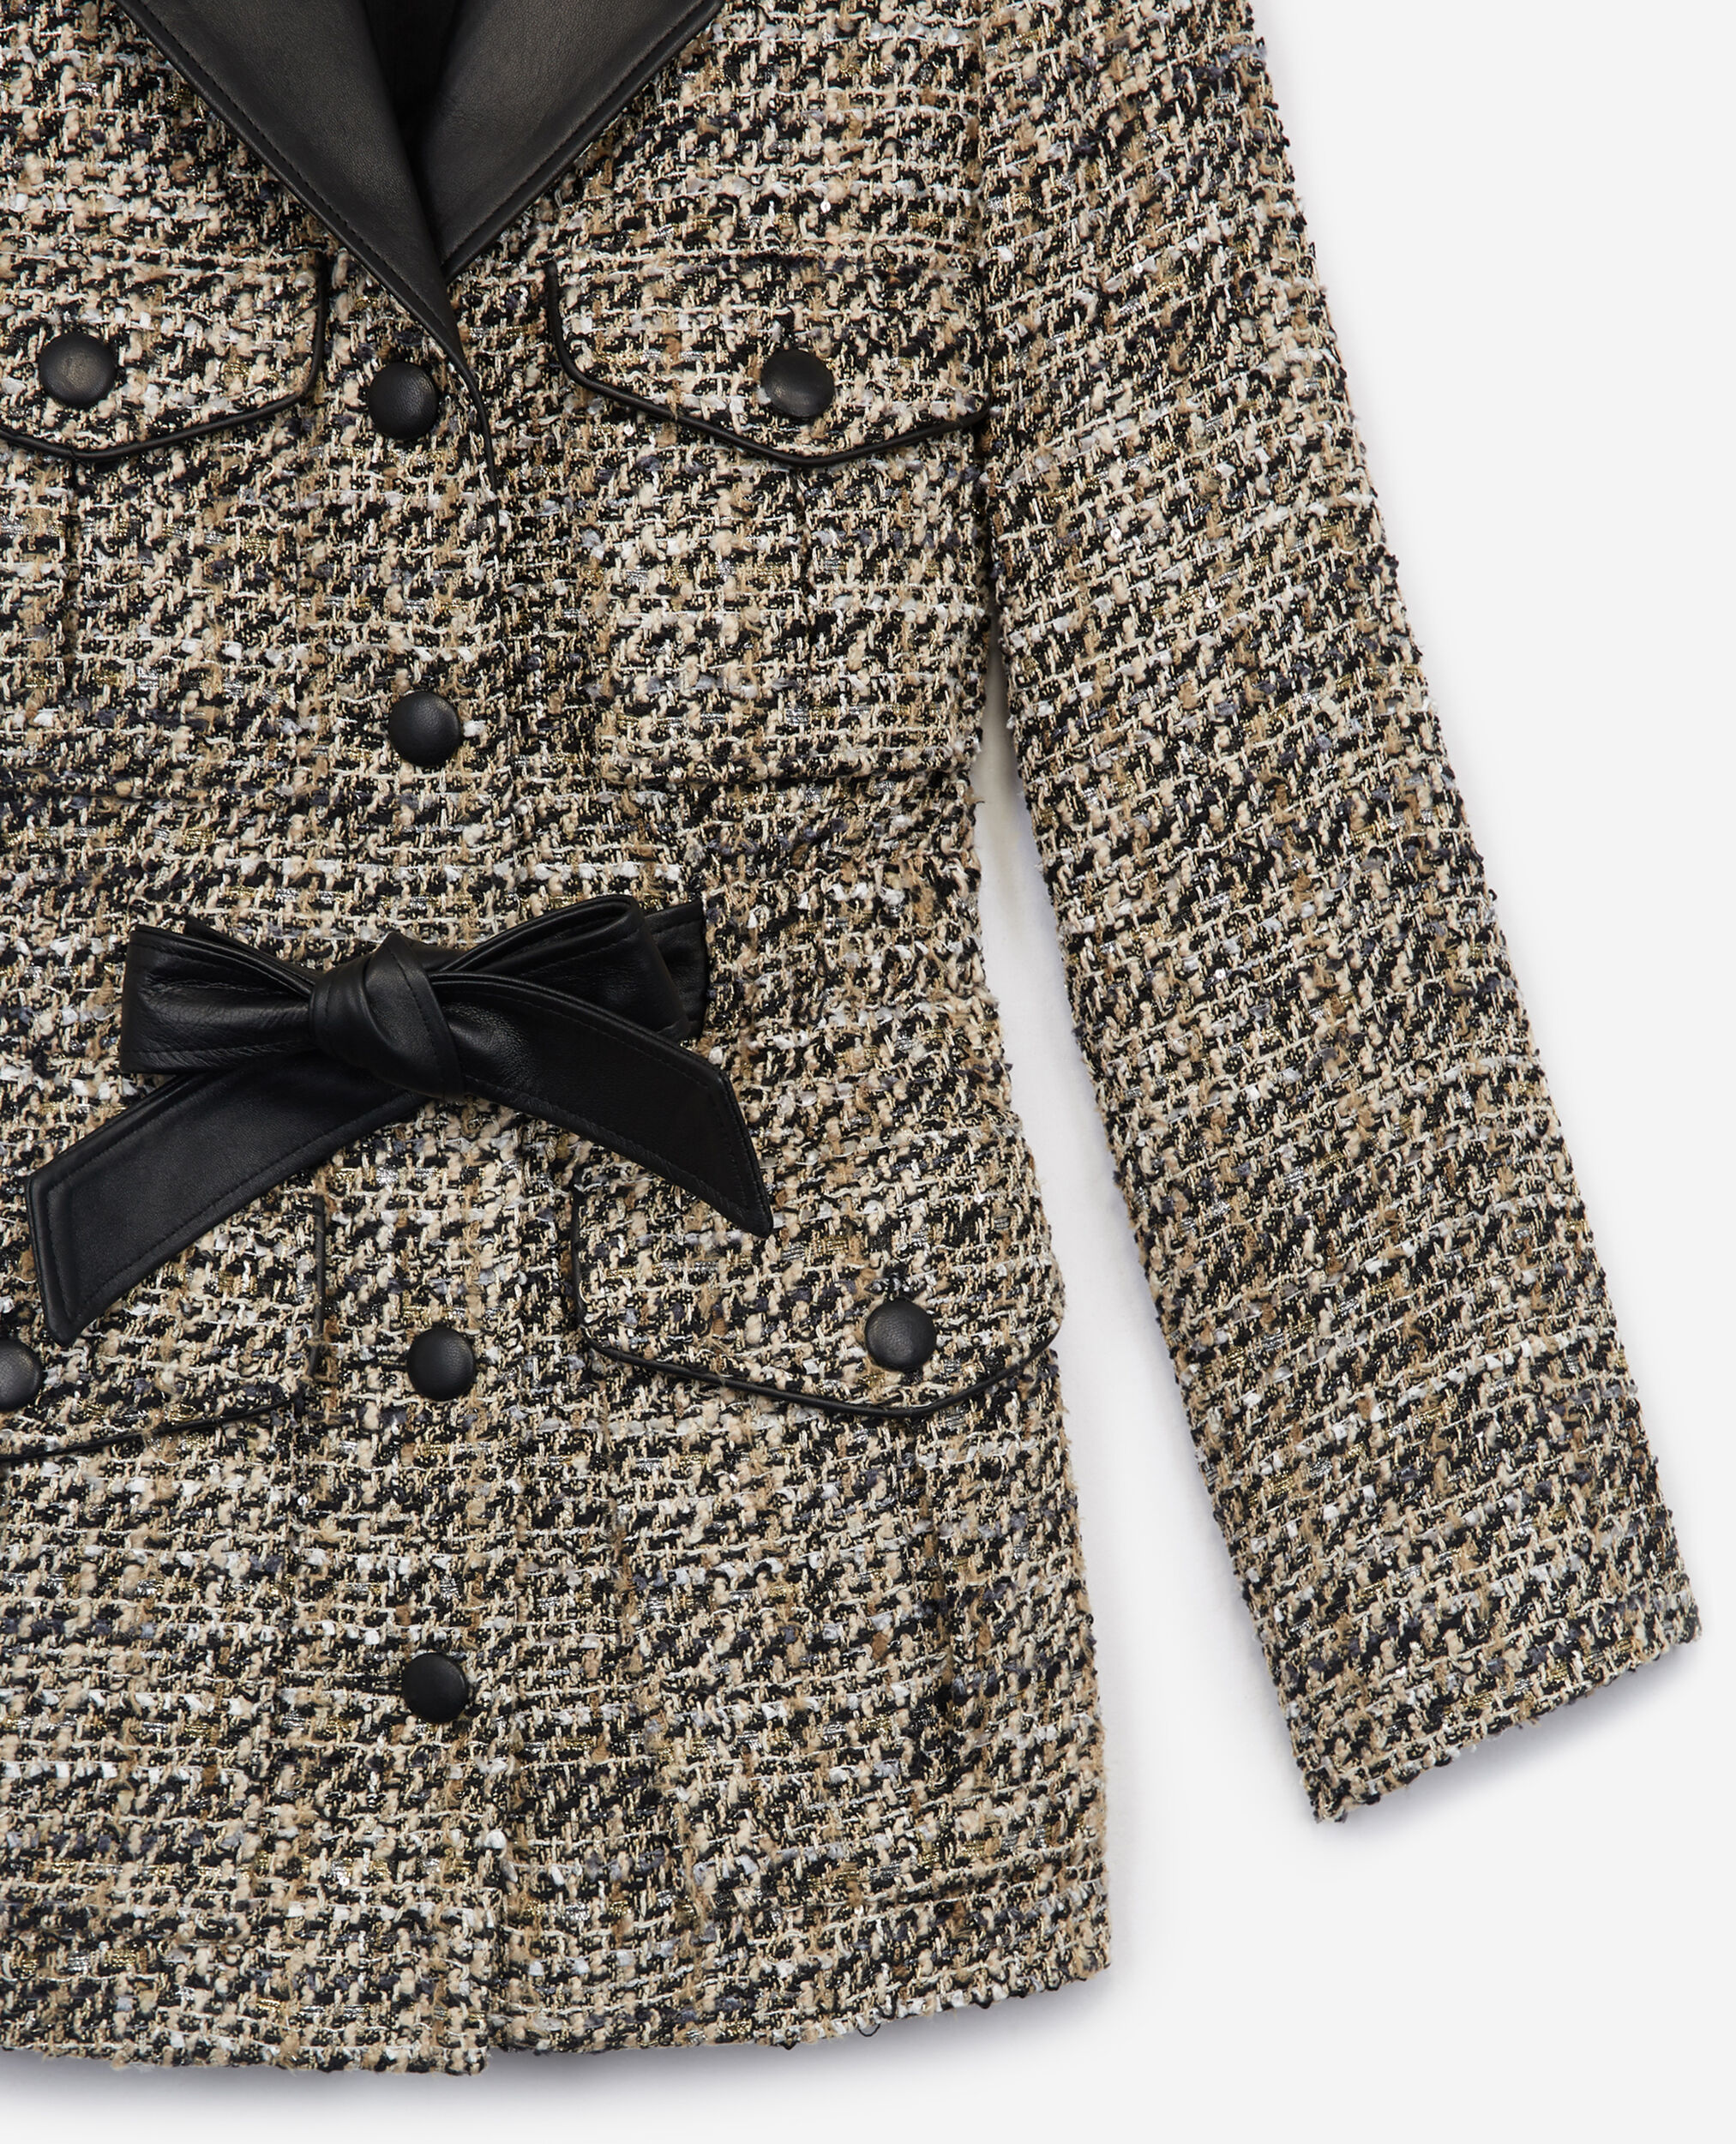  Blazer aus Tweed in Grau mit Lederdetails, GREY BLACK, hi-res image number null